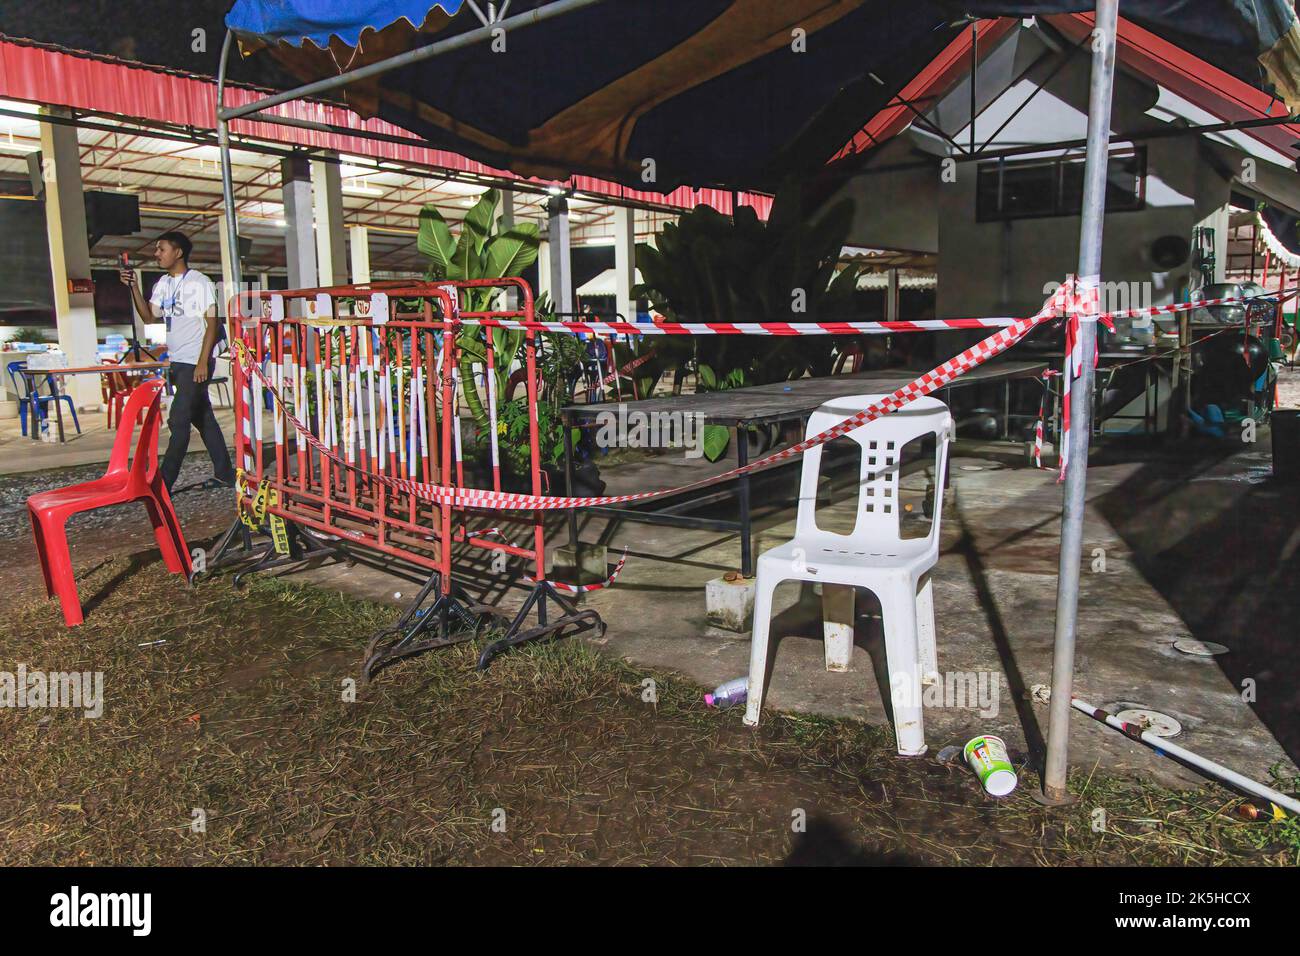 Die Außenküche, in der das Massaker begann, wird mit einem Polizeiband abgesperrt. Die Nachwirkungen eines Kanonen- und Messerangriffs eines ehemaligen Polizisten, der in einer Baumschule im Bezirk Na Klang in der Provinz Nong Bua Lamphu im Nordosten Thailands begann. Dieses Massaker endete mit 38 Toten, darunter 24 Kinder. Der Mörder wurde als der ehemalige Polizeibeamte Panya Khamrab identifiziert, der später in seinem Haus Selbstmord beging, nachdem er seine Frau, seinen Sohn und zwei andere Verwandte am selben Tag getötet hatte. Stockfoto